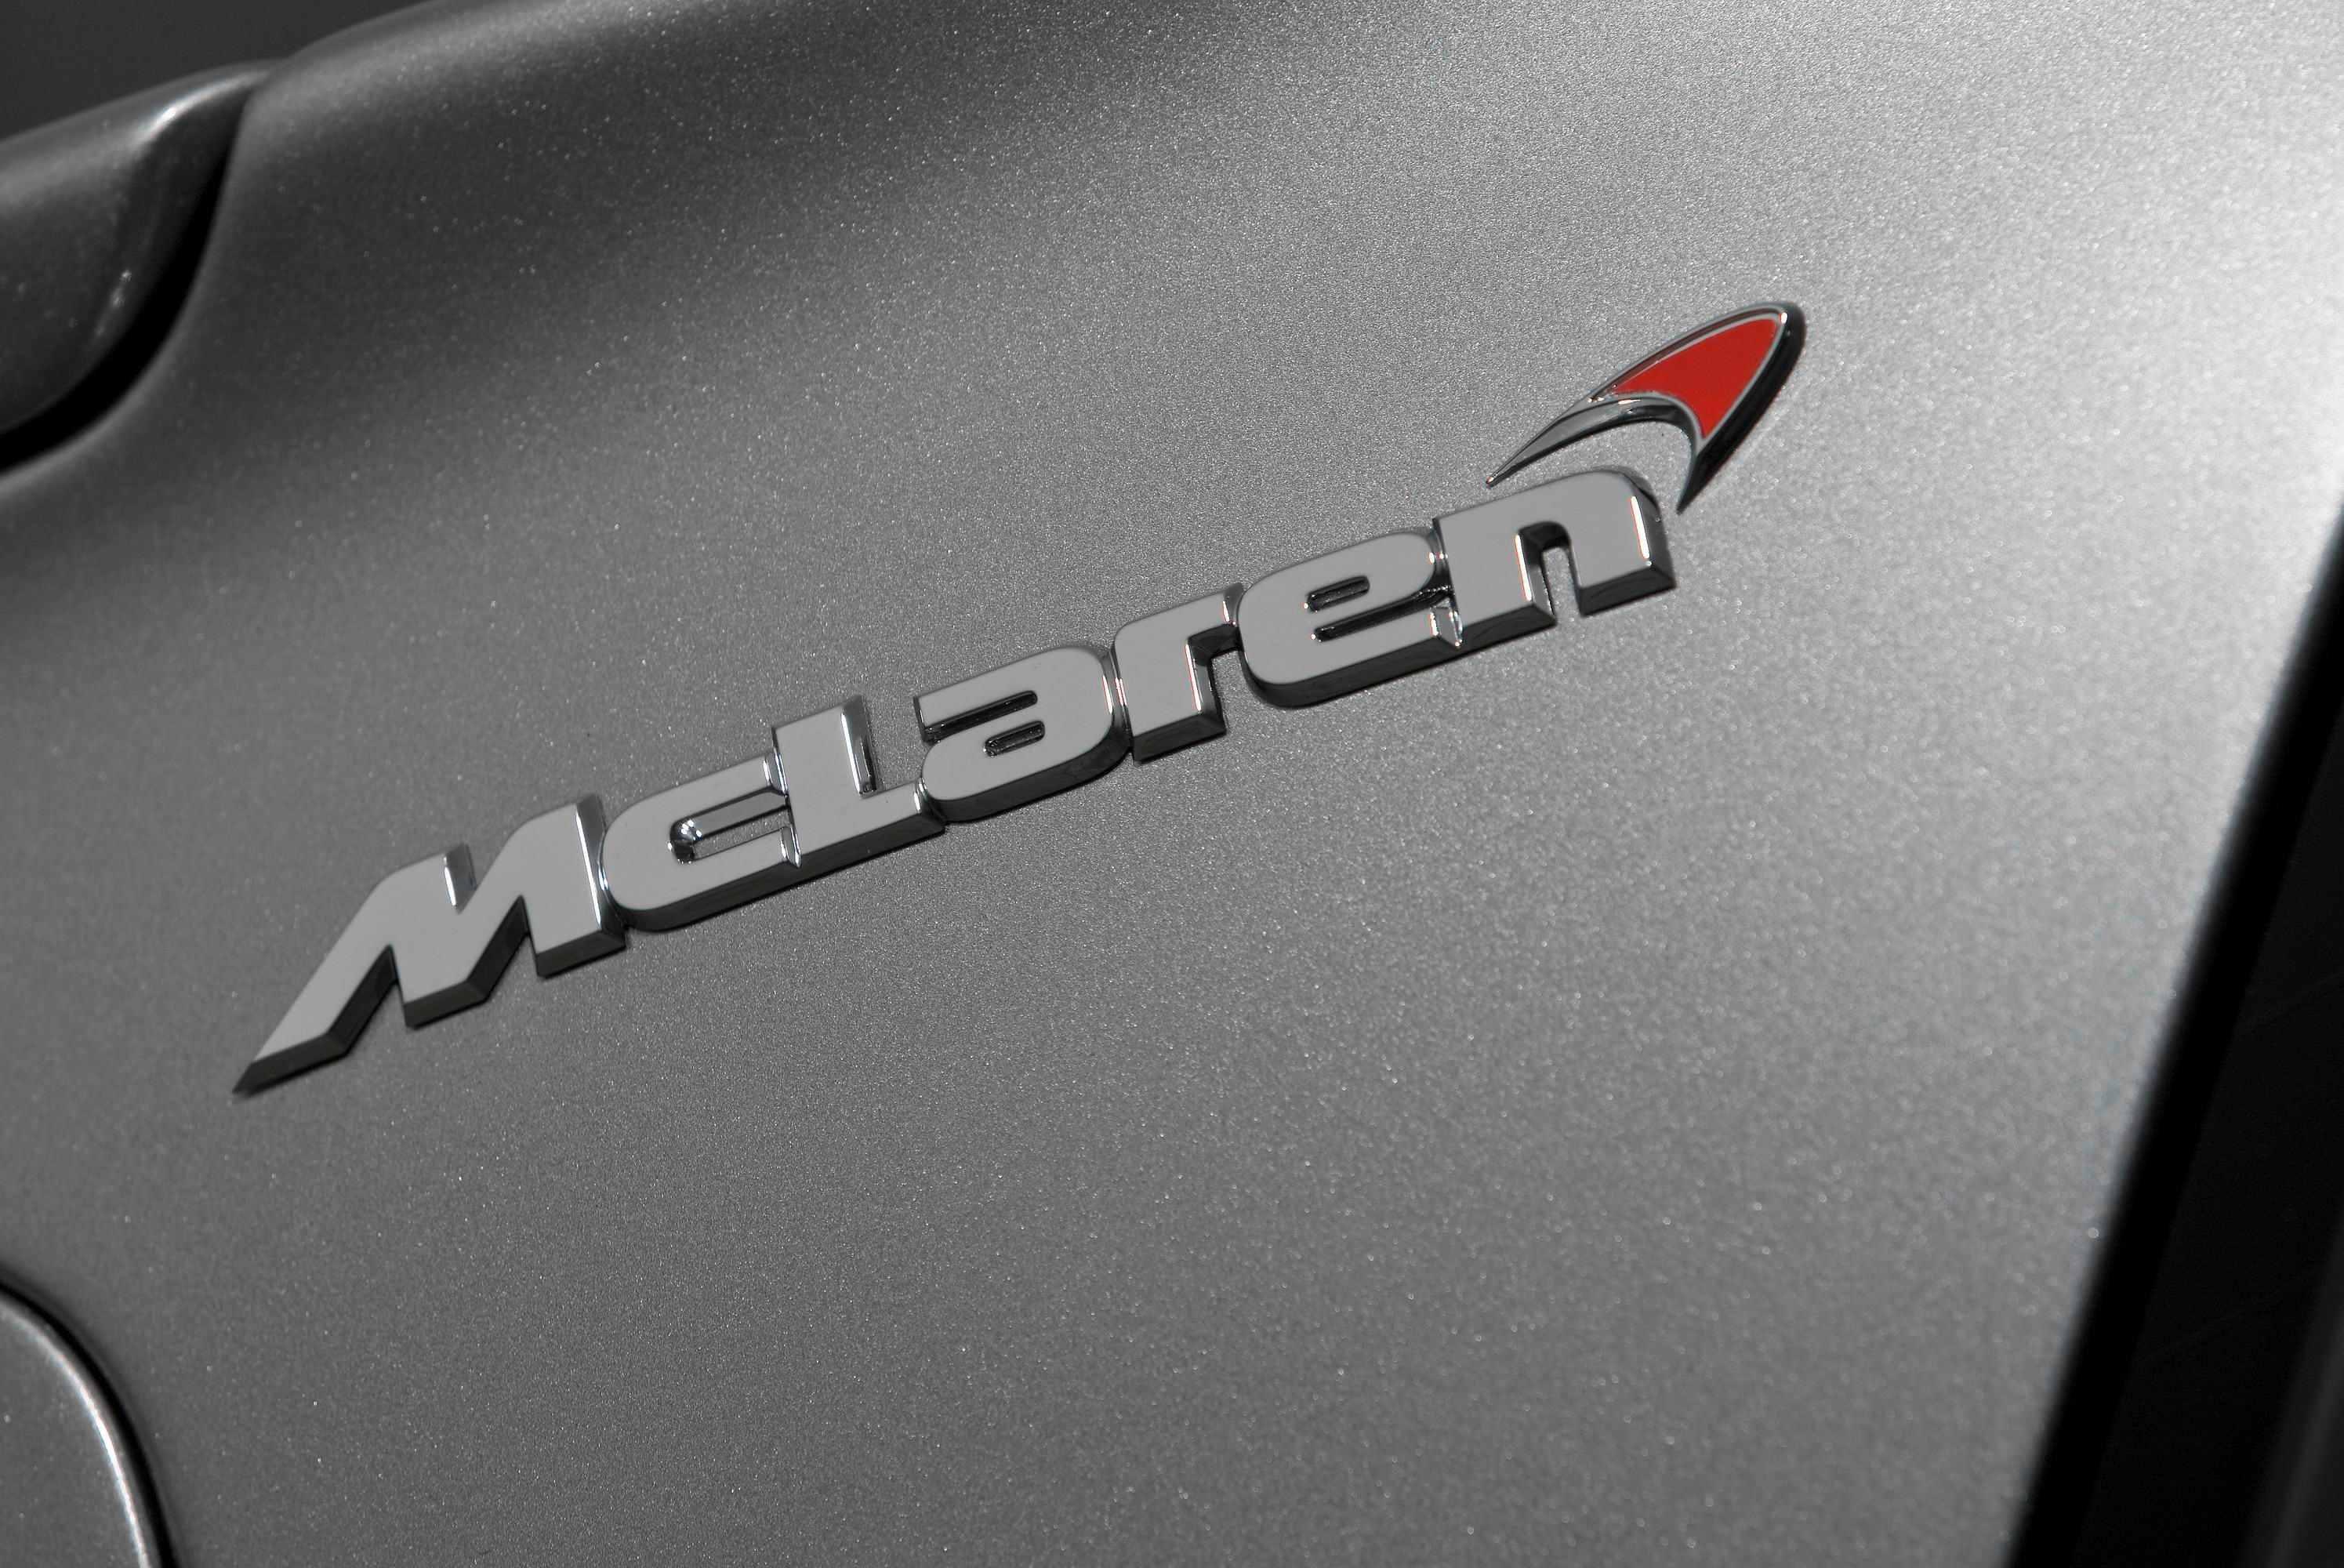 2009 Mercedes SLR McLaren Roadster 722 S